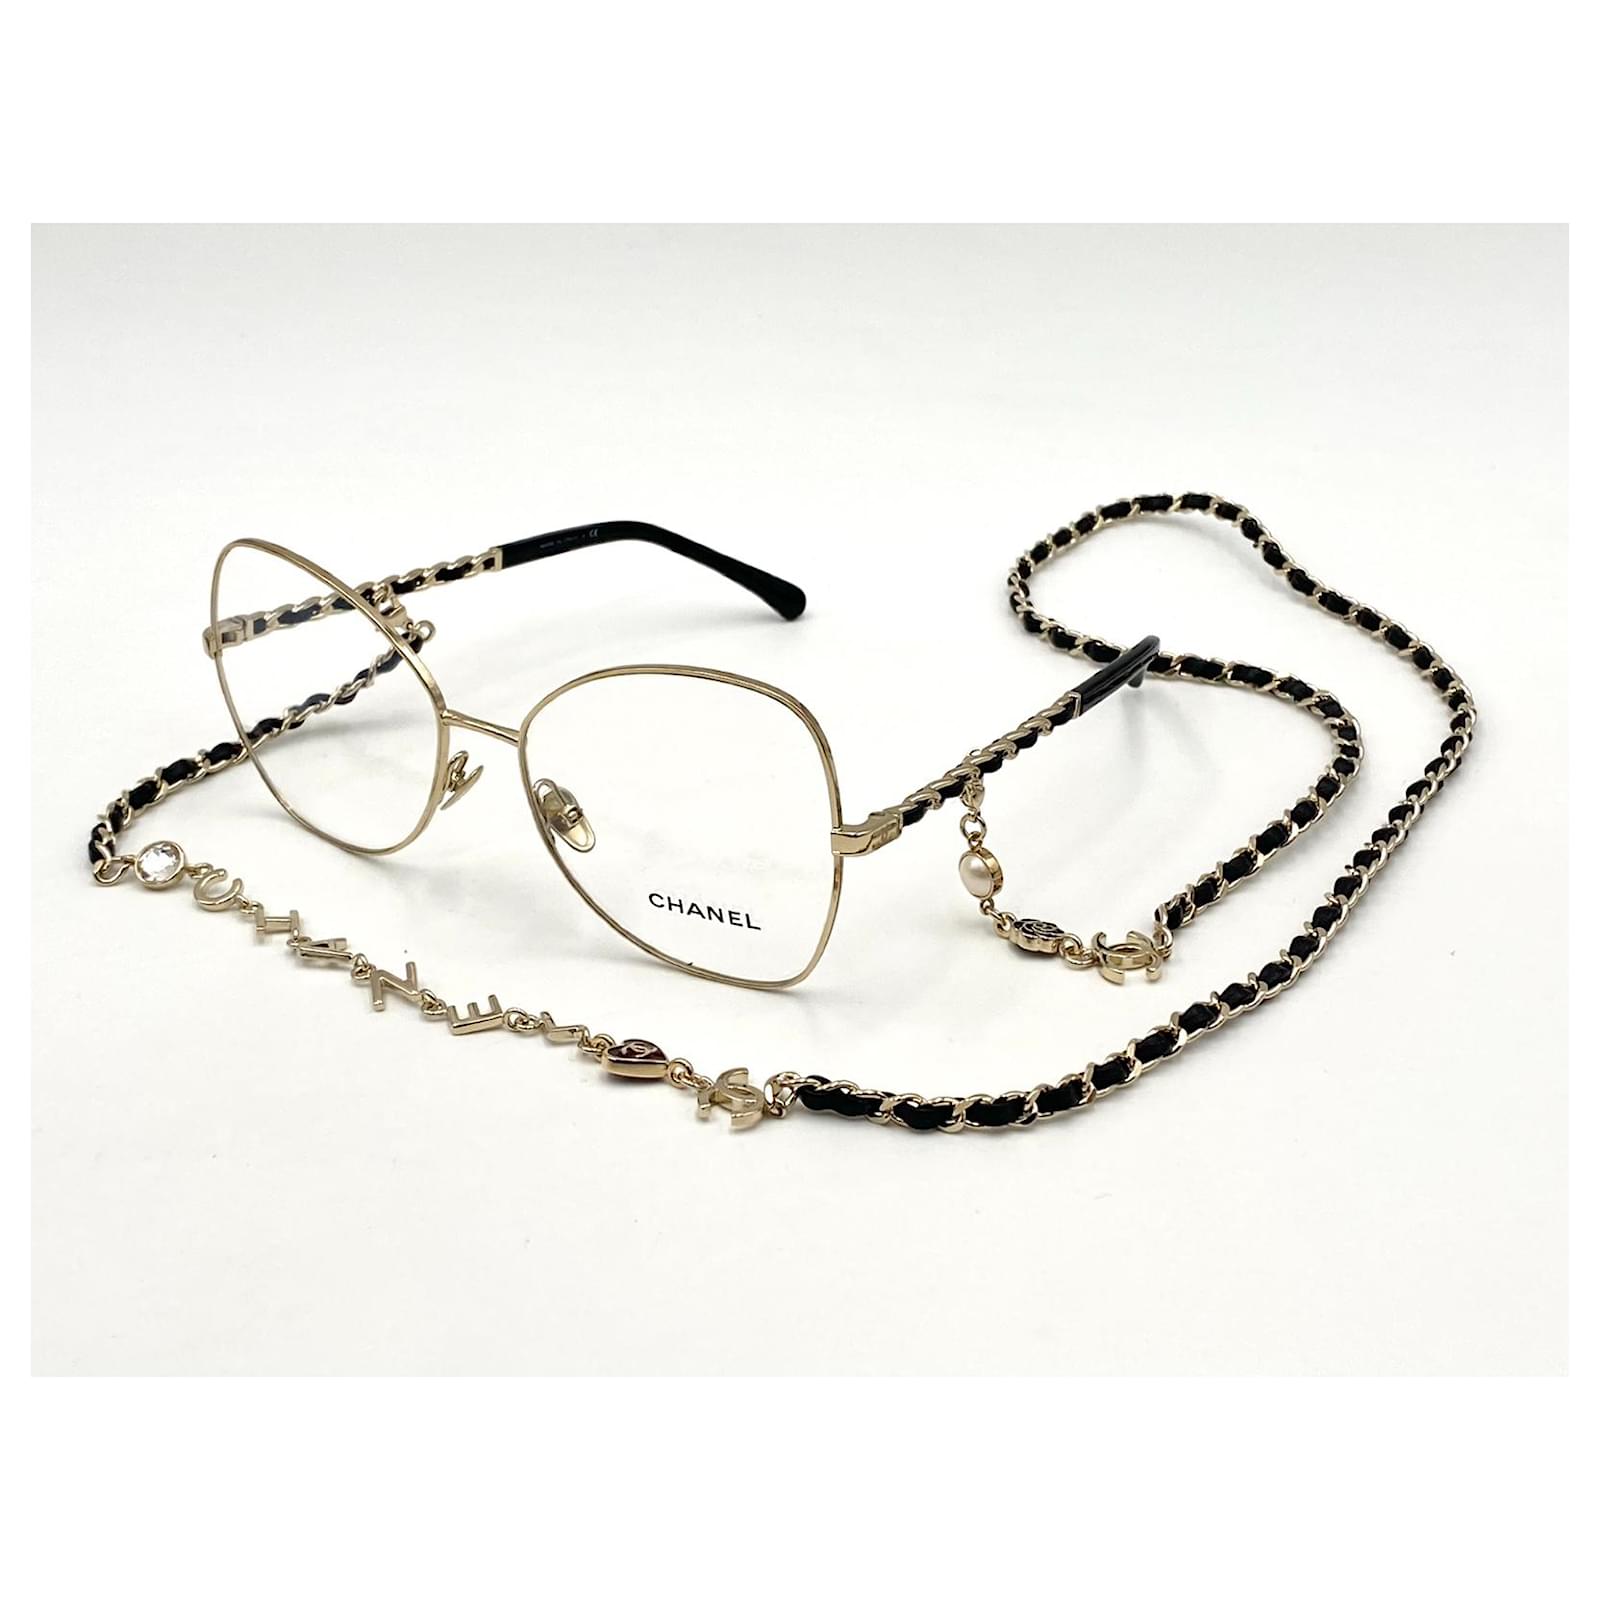 Eyeglasses: Butterfly Eyeglasses, metal — Fashion